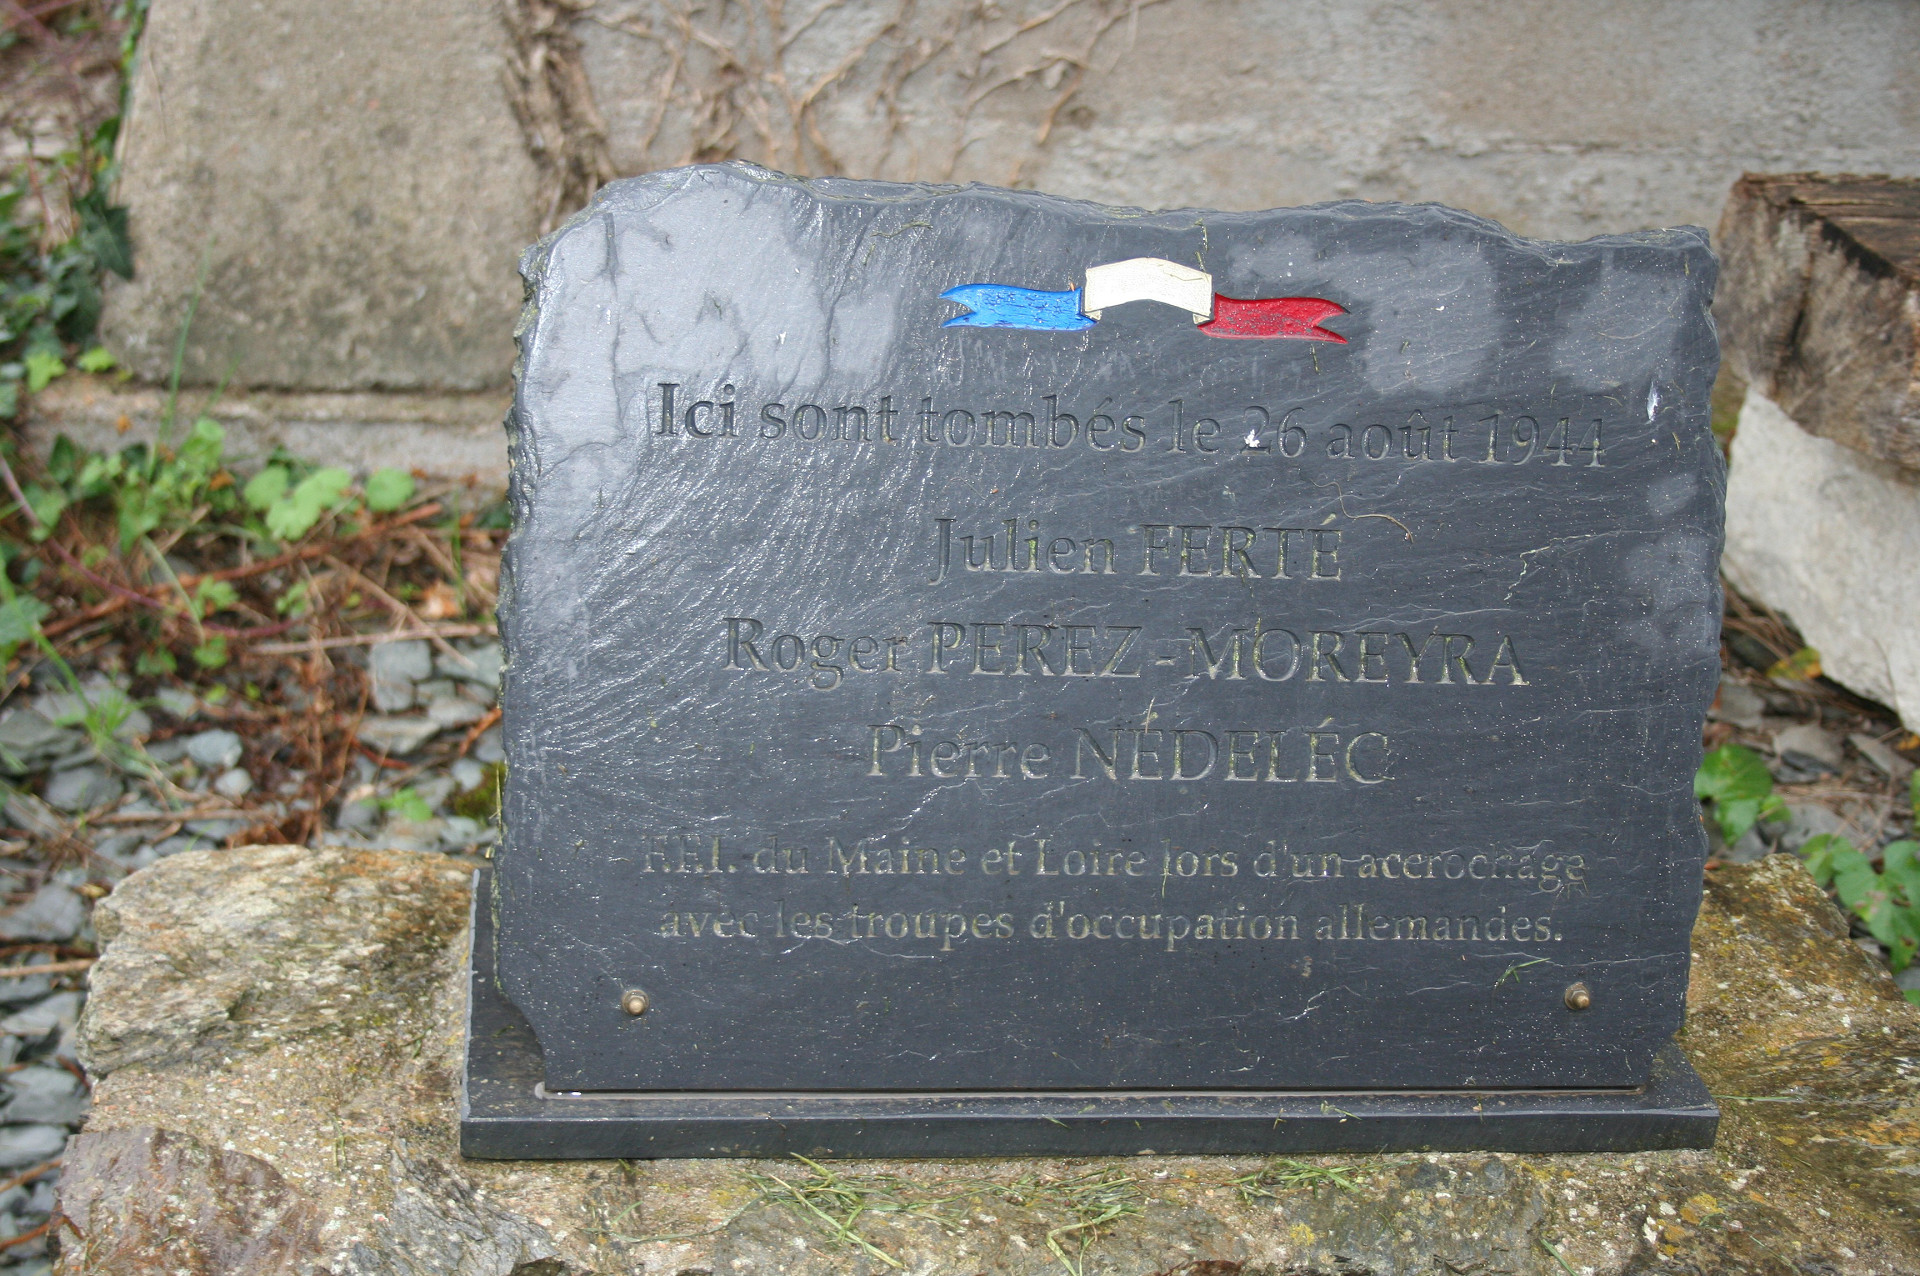 Plaque posée en mémoire des victimes du 26 août 1944, seule trace rappelant le drame aujourd'hui